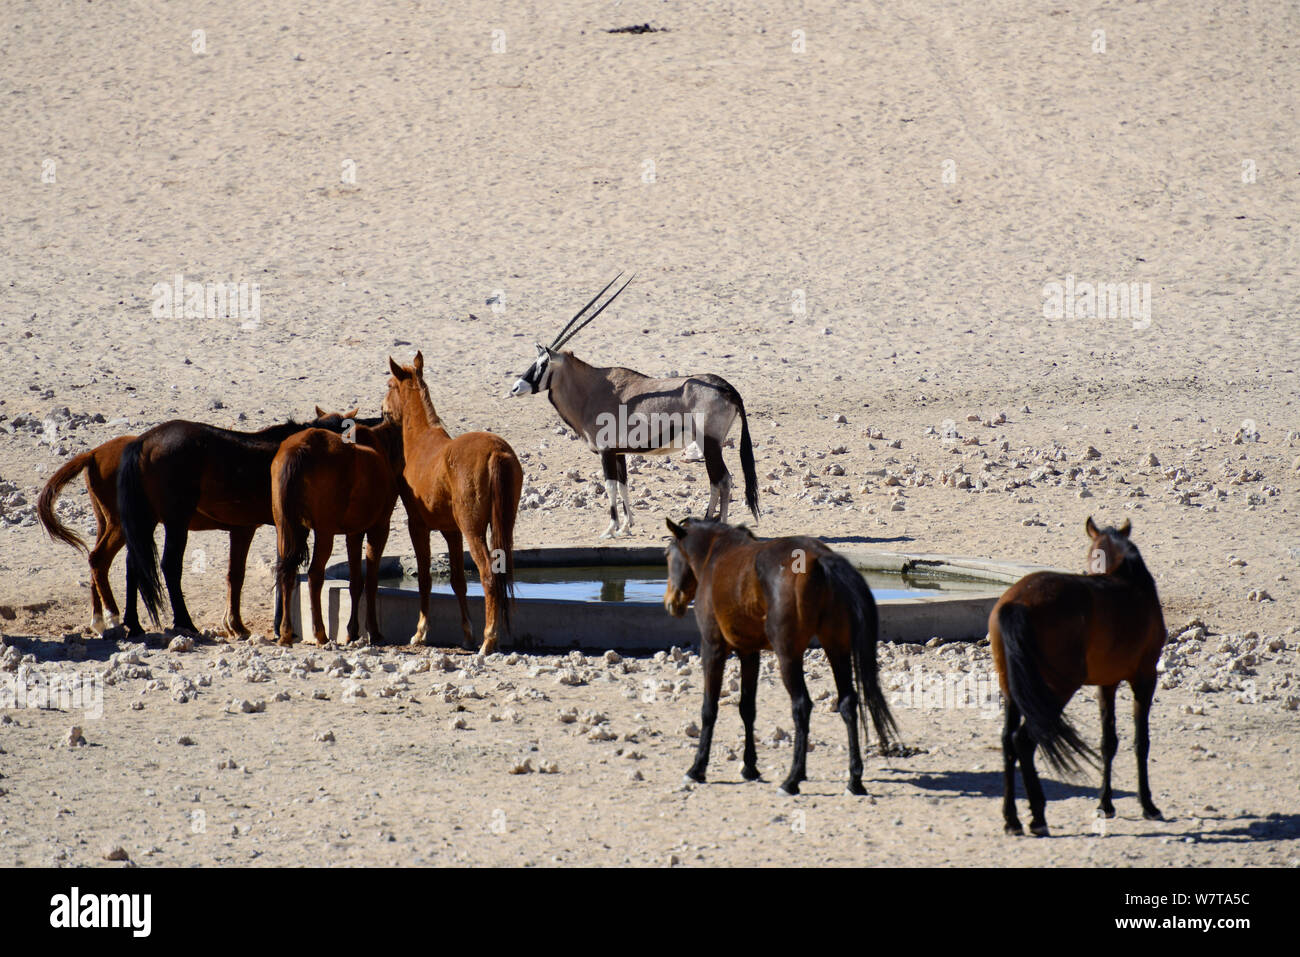 Cavalli selvaggi del Namib con un Oryx (Oryx gazella) acqua potabile a un'artificiale punto d'acqua. Questi cavalli selvaggi sono probabilmente il solo deserto selvaggio dimora di cavalli nel mondo. Garub pianura, Aus, Namib Desert, Namibia Foto Stock